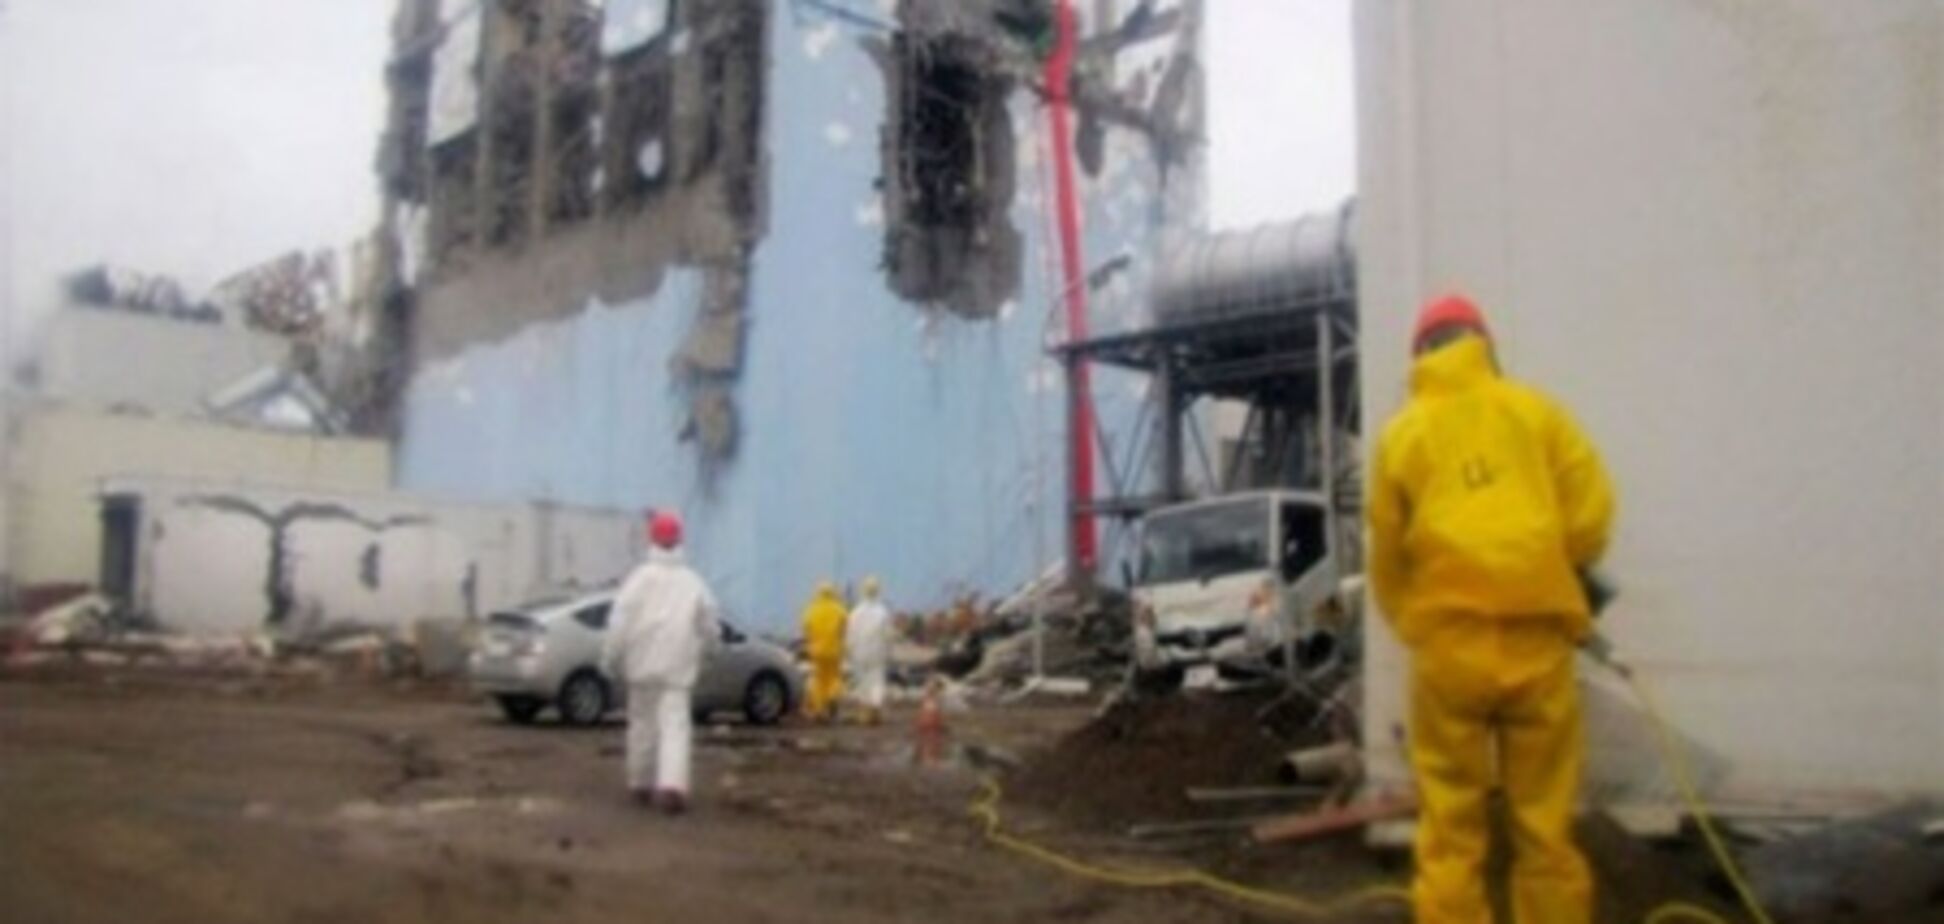 Ликвидатор с 'Фукусимы': нас убивает радиация, но терять нечего - наши семьи и друзья мертвы